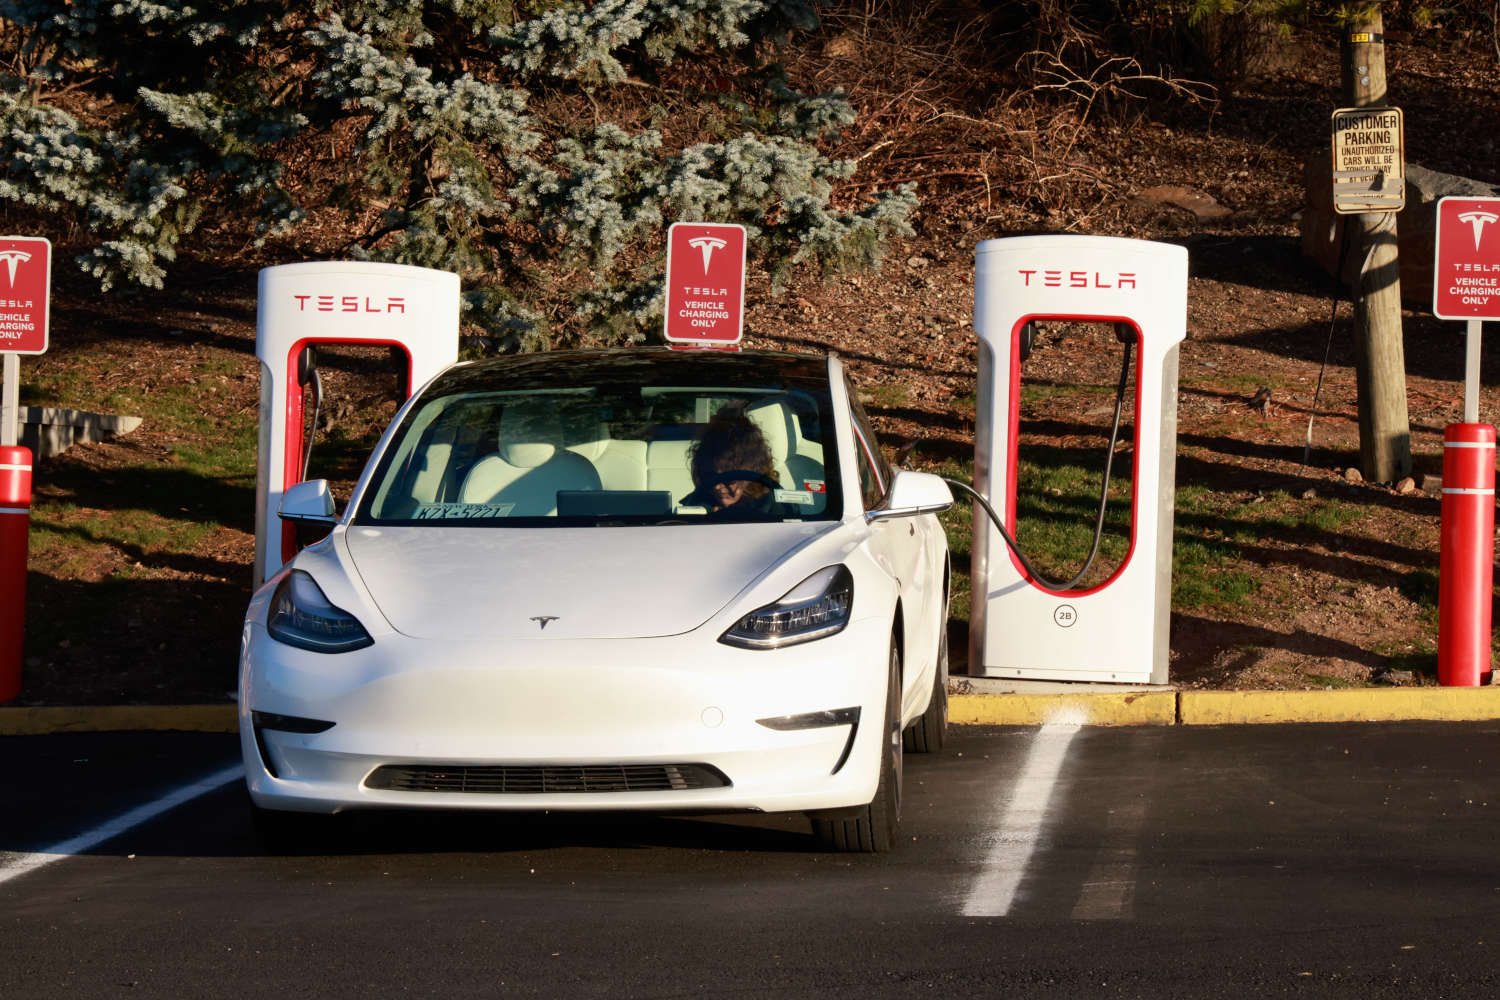 The Tesla Supercharger Network charging a Tesla EV